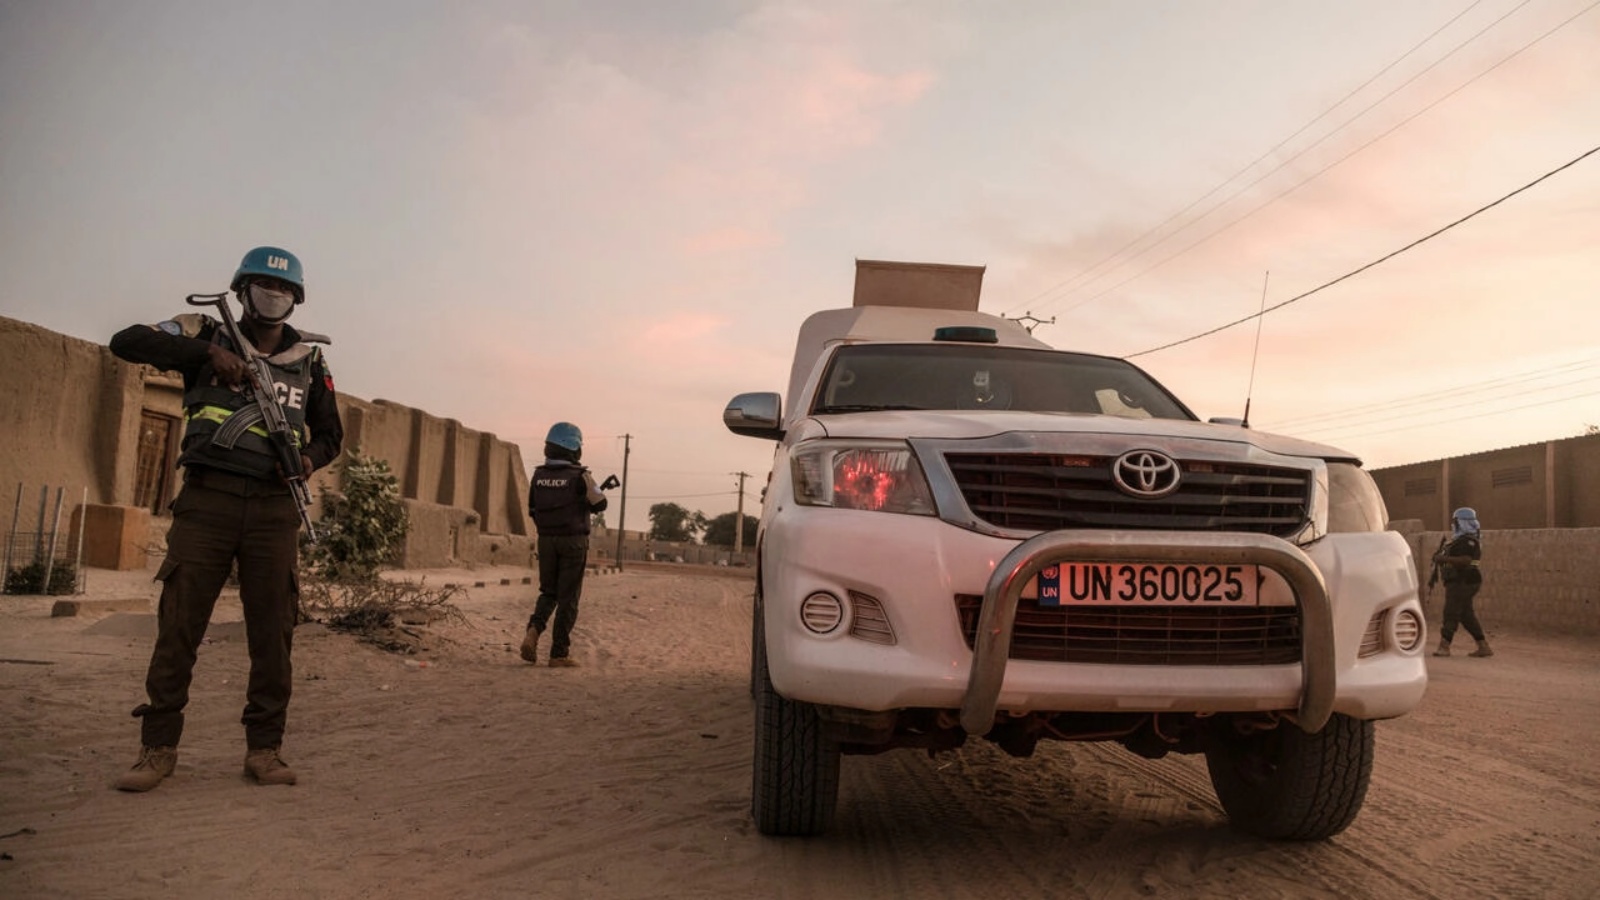 شرطي تابع للأمم المتحدة يرافق سيارة مصفحة تابعة لبعثة مينوسما في مالي خلال دورية في تمبكتو، في 8 ديسمبر 2021